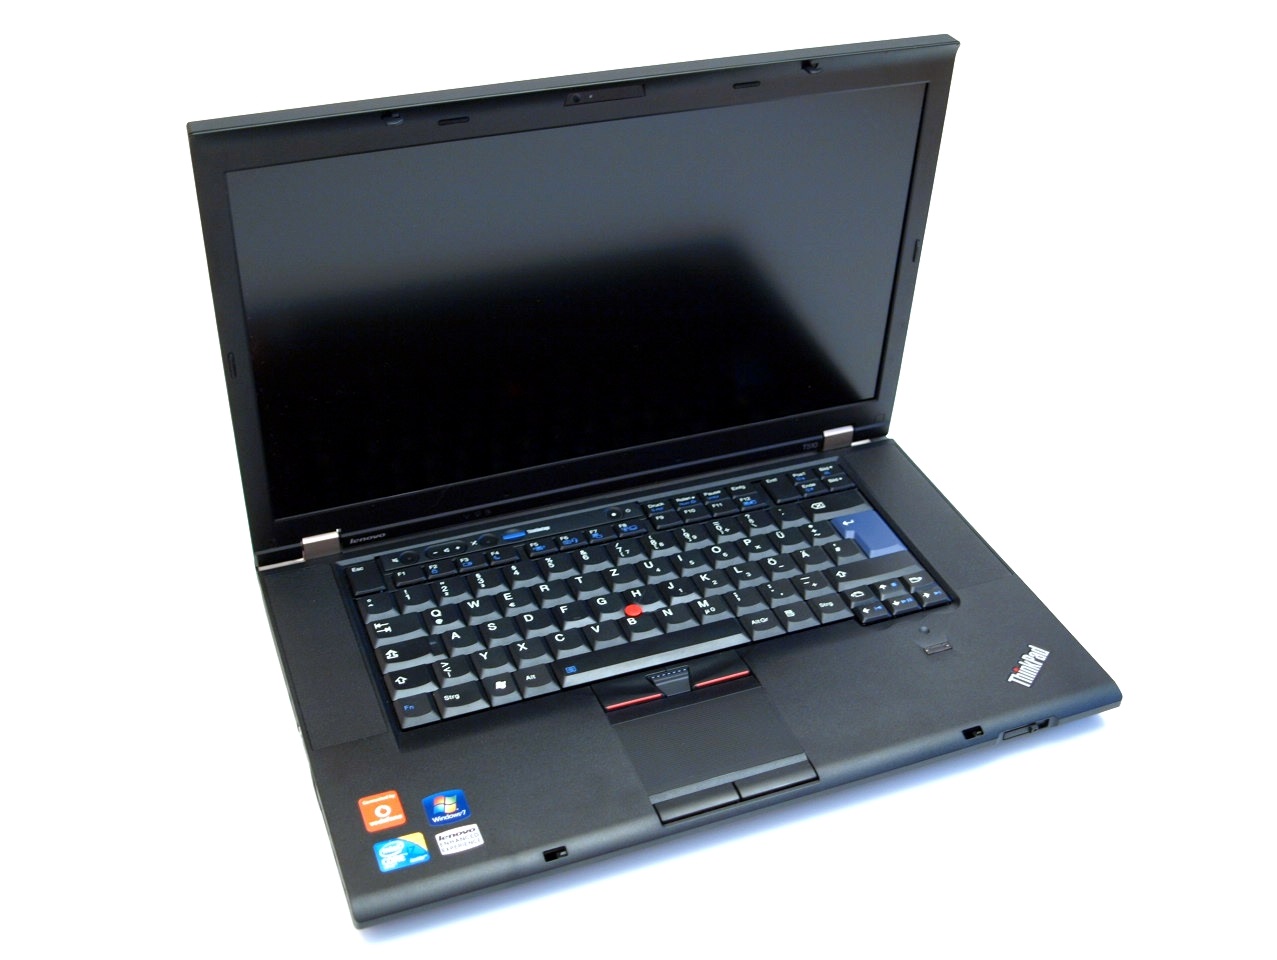 Lenovo Thinkpad W510 Core i5 520M, 4GB, 250GB, VGA 1GB NVidia Quadro FX880M, 15.6 inch